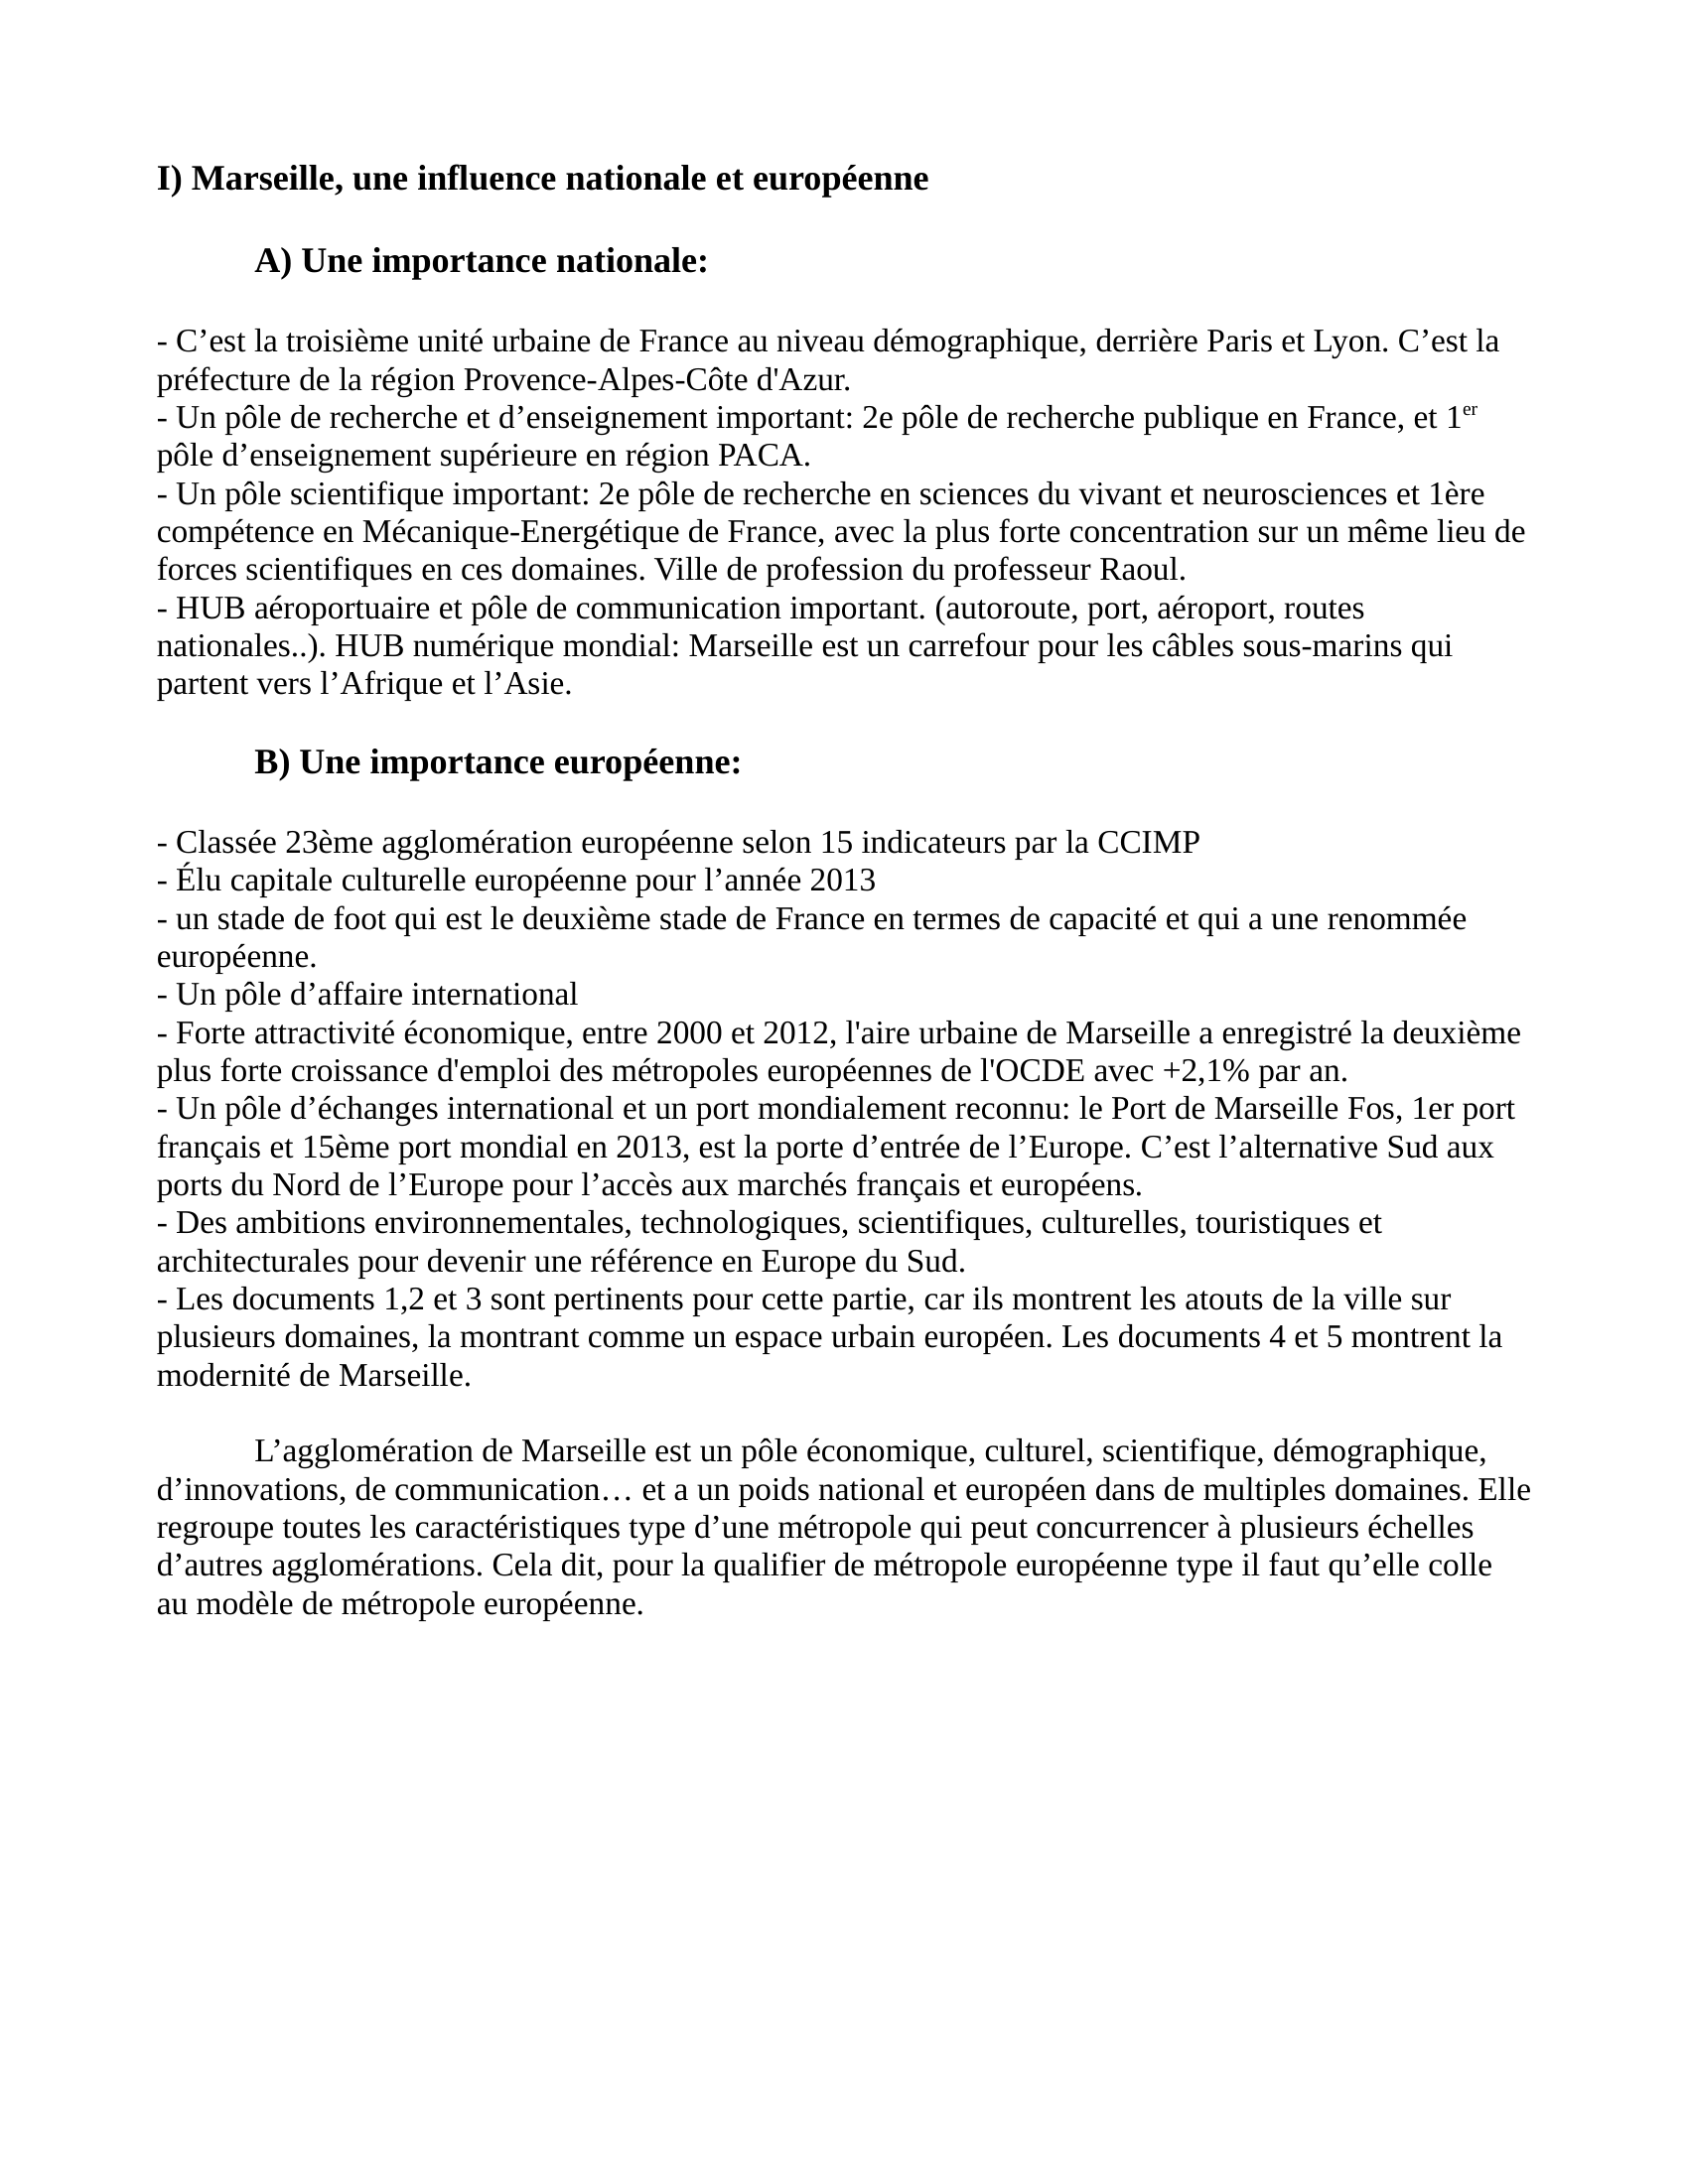 Prévisualisation du document LescamelaCommentaire de documents:  
 
Lionel Marseille, une métropole européenne?